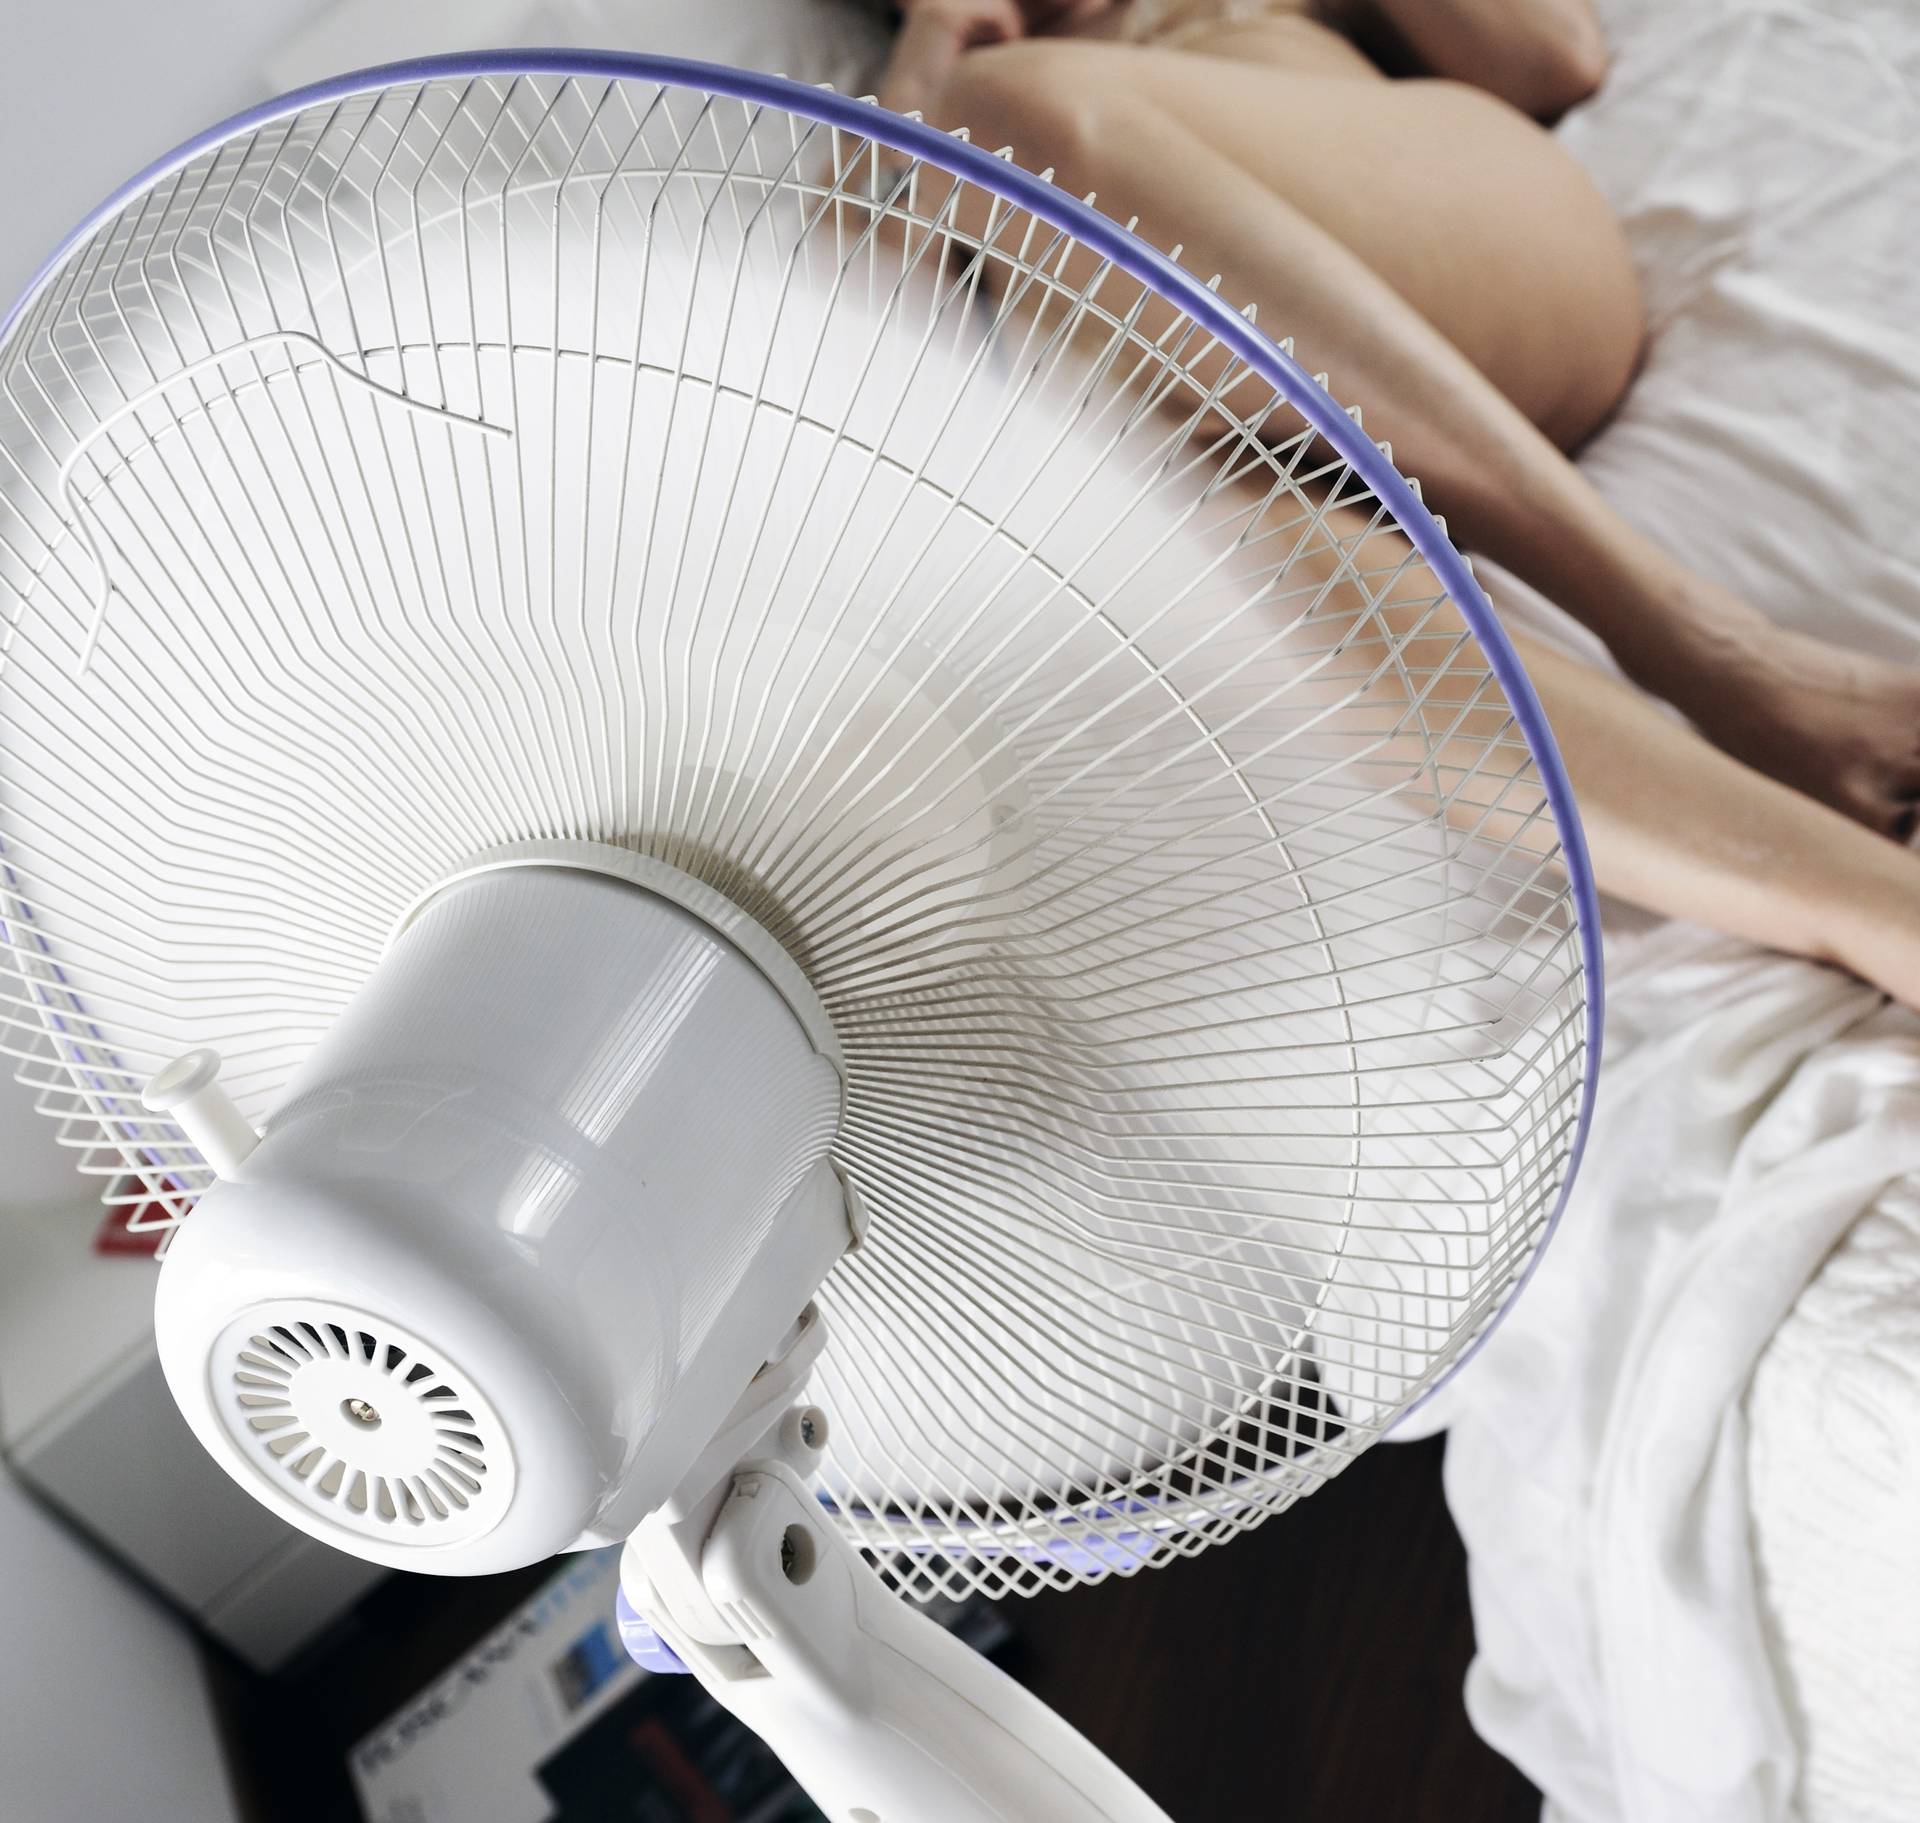 3 super trika kako ventilator pretvoriti u klimu - brzo i lako